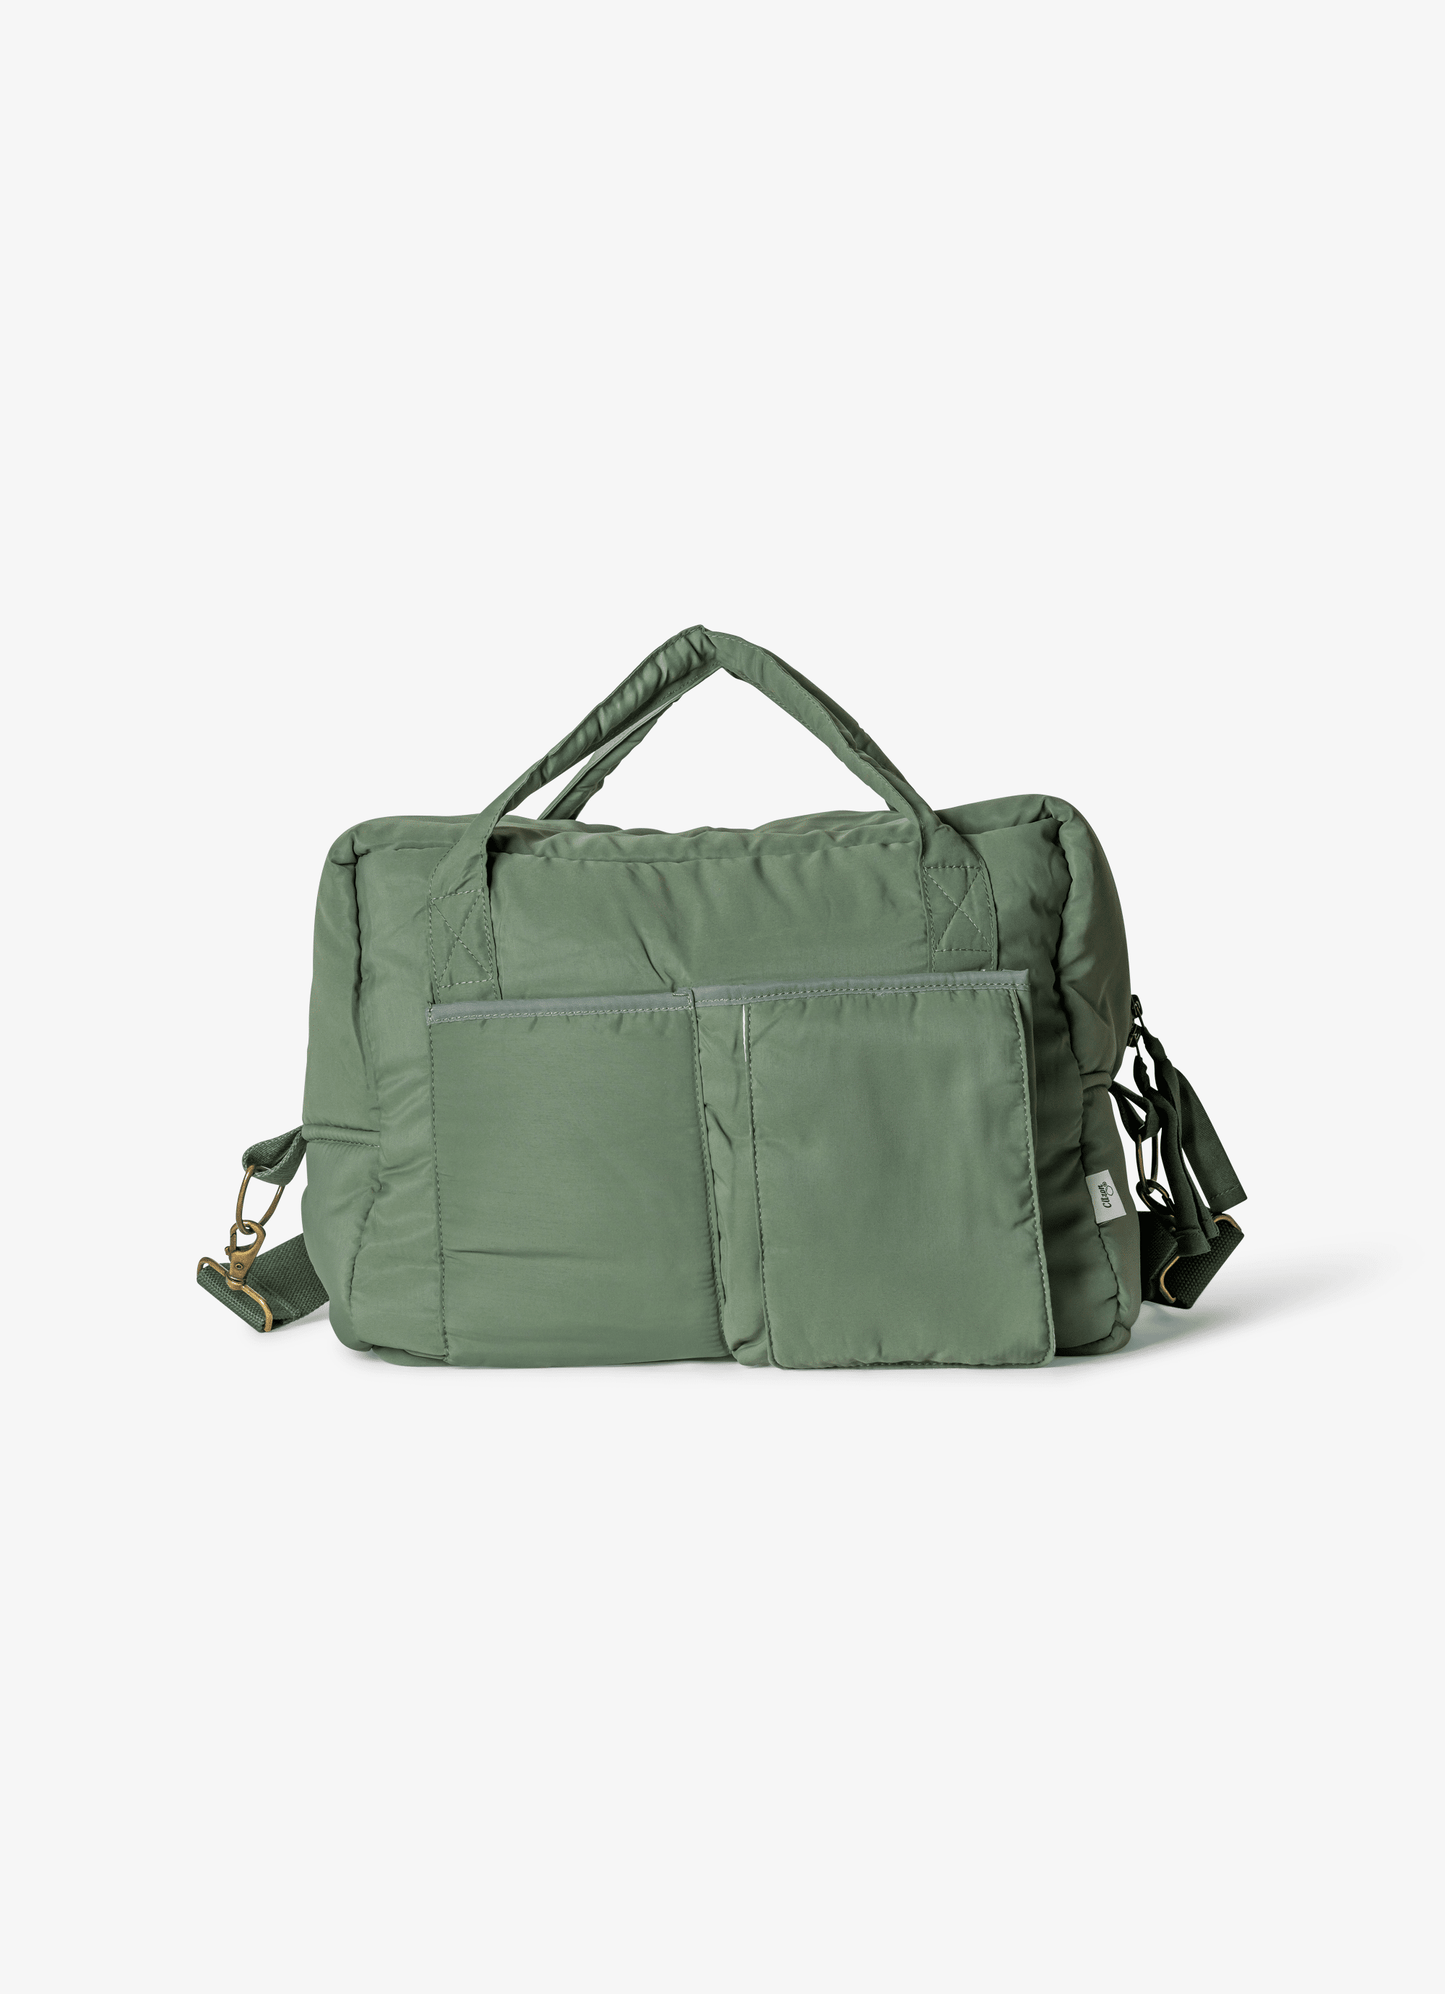  حقيبة متعددة االإستعمالات - زيتوني أخضر